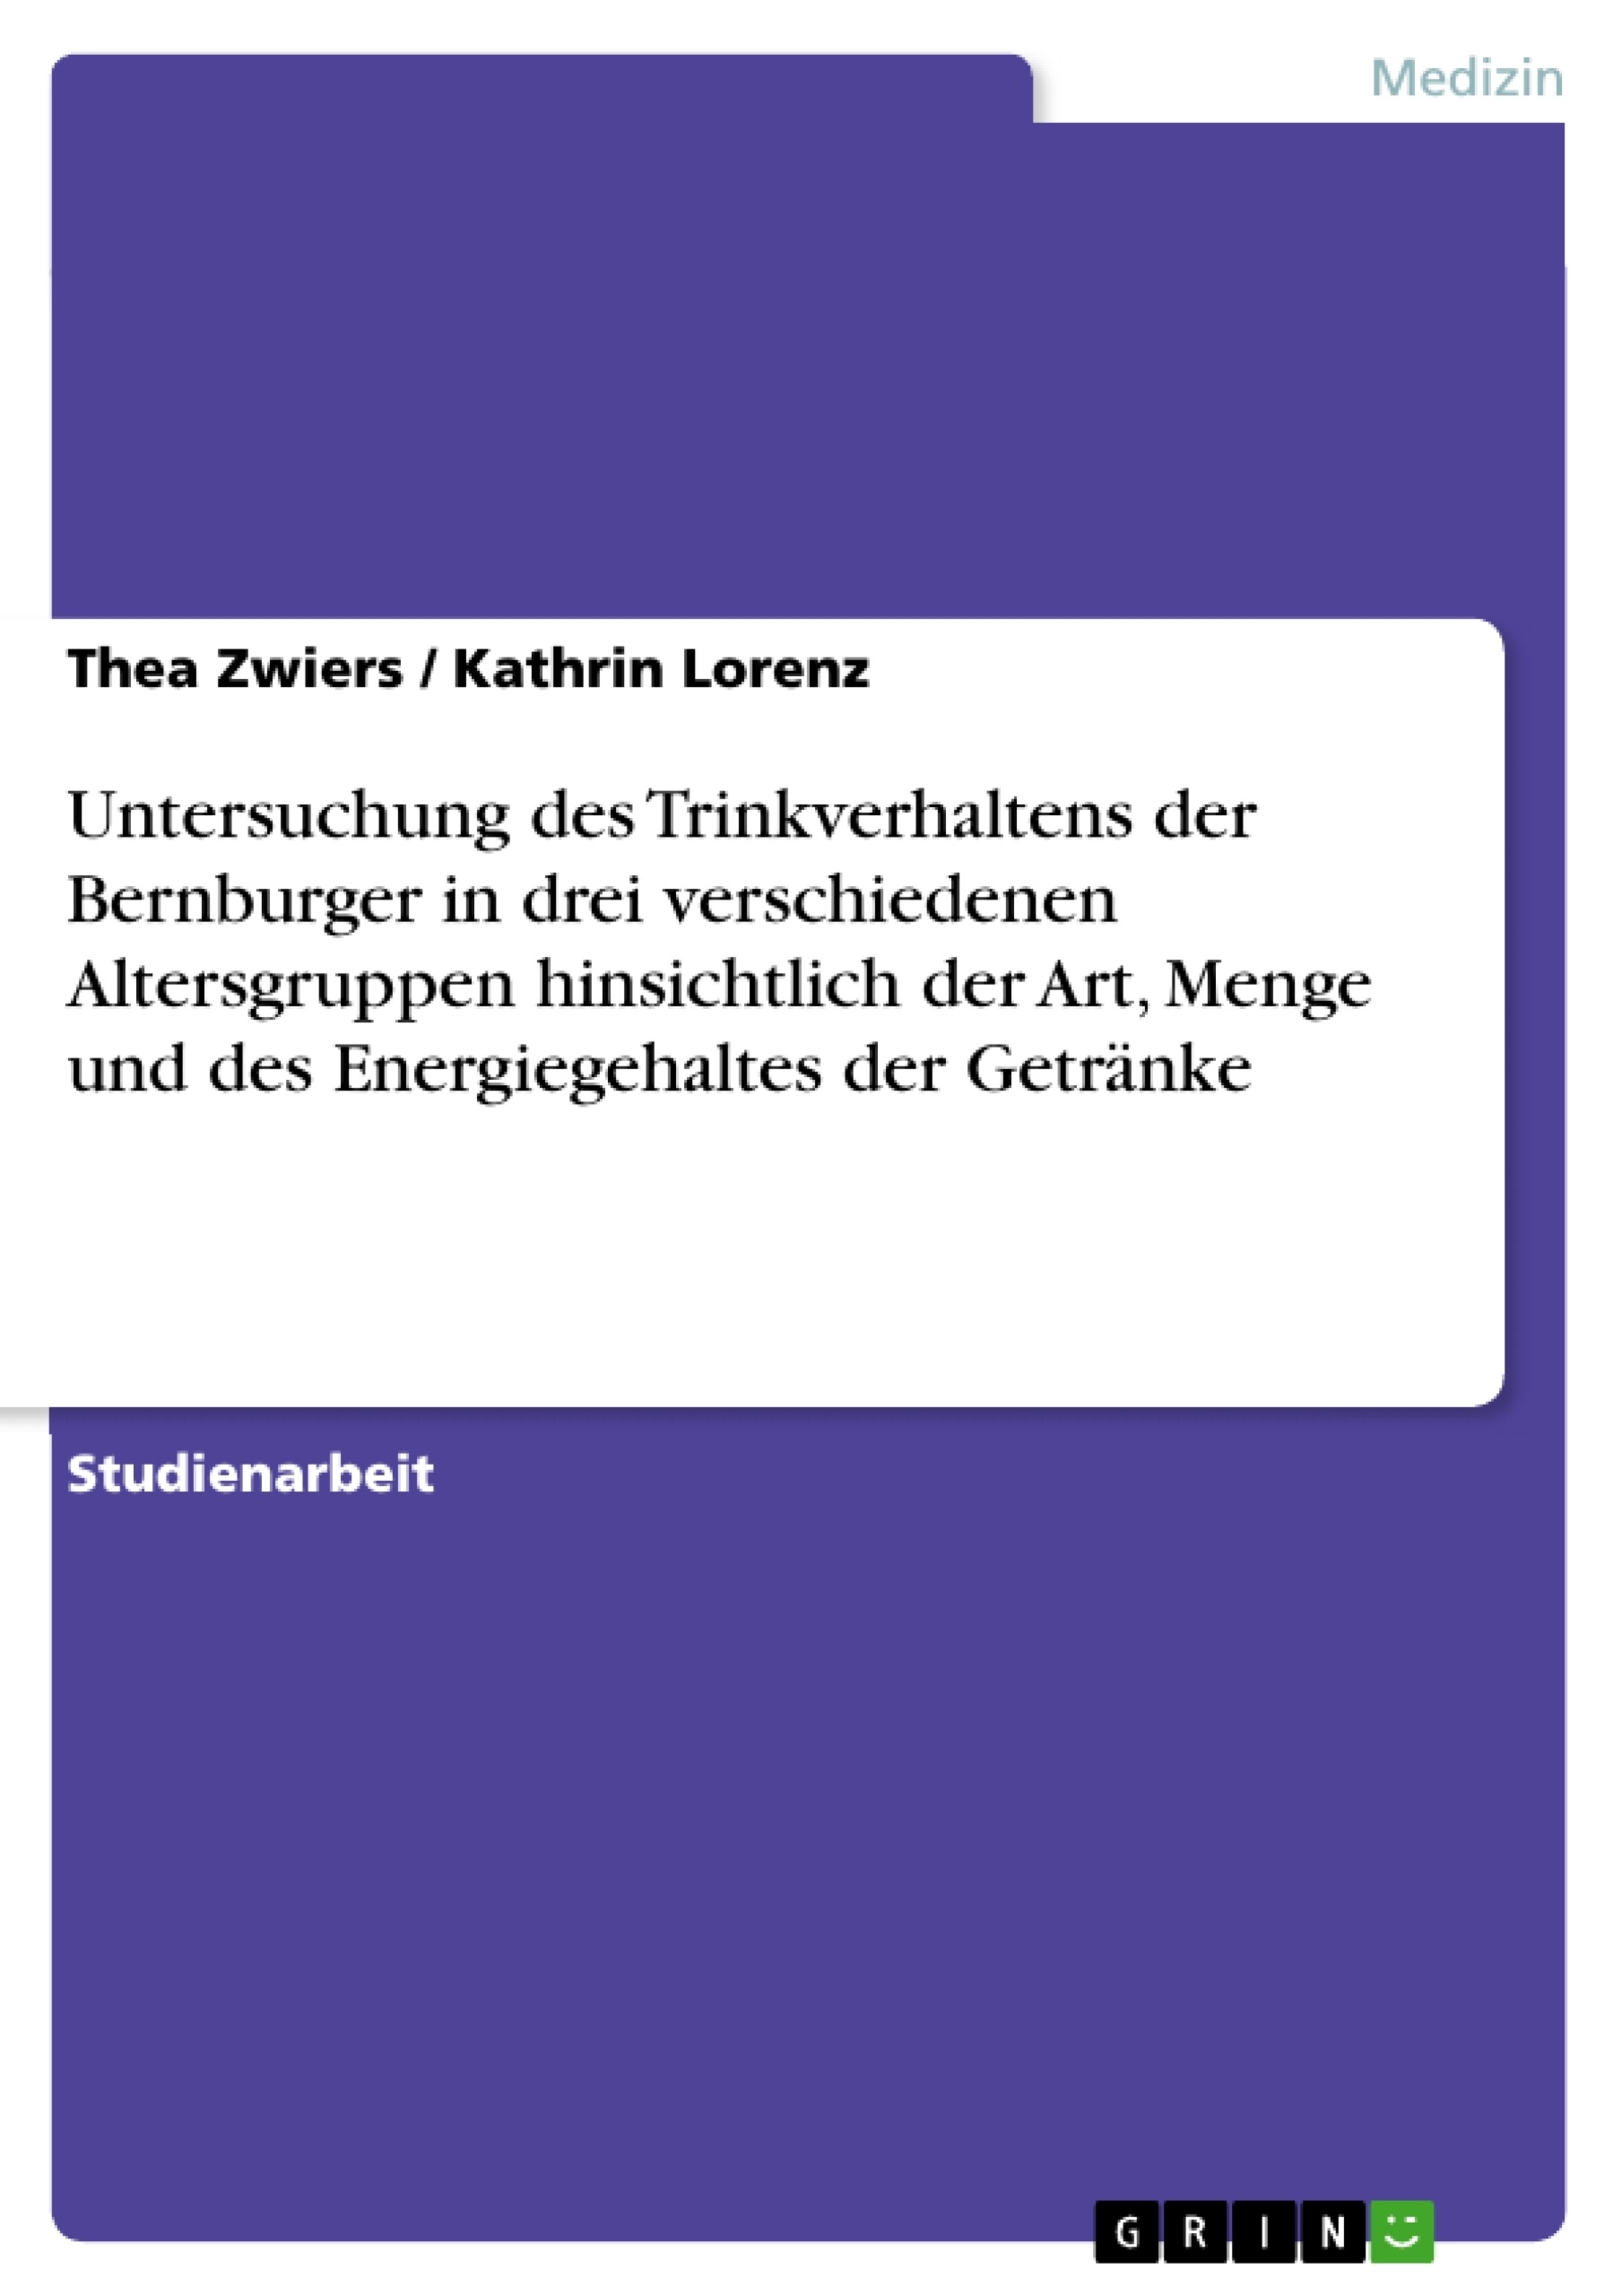 Título: Untersuchung des Trinkverhaltens der Bernburger in drei verschiedenen Altersgruppen hinsichtlich der Art, Menge und des Energiegehaltes der Getränke